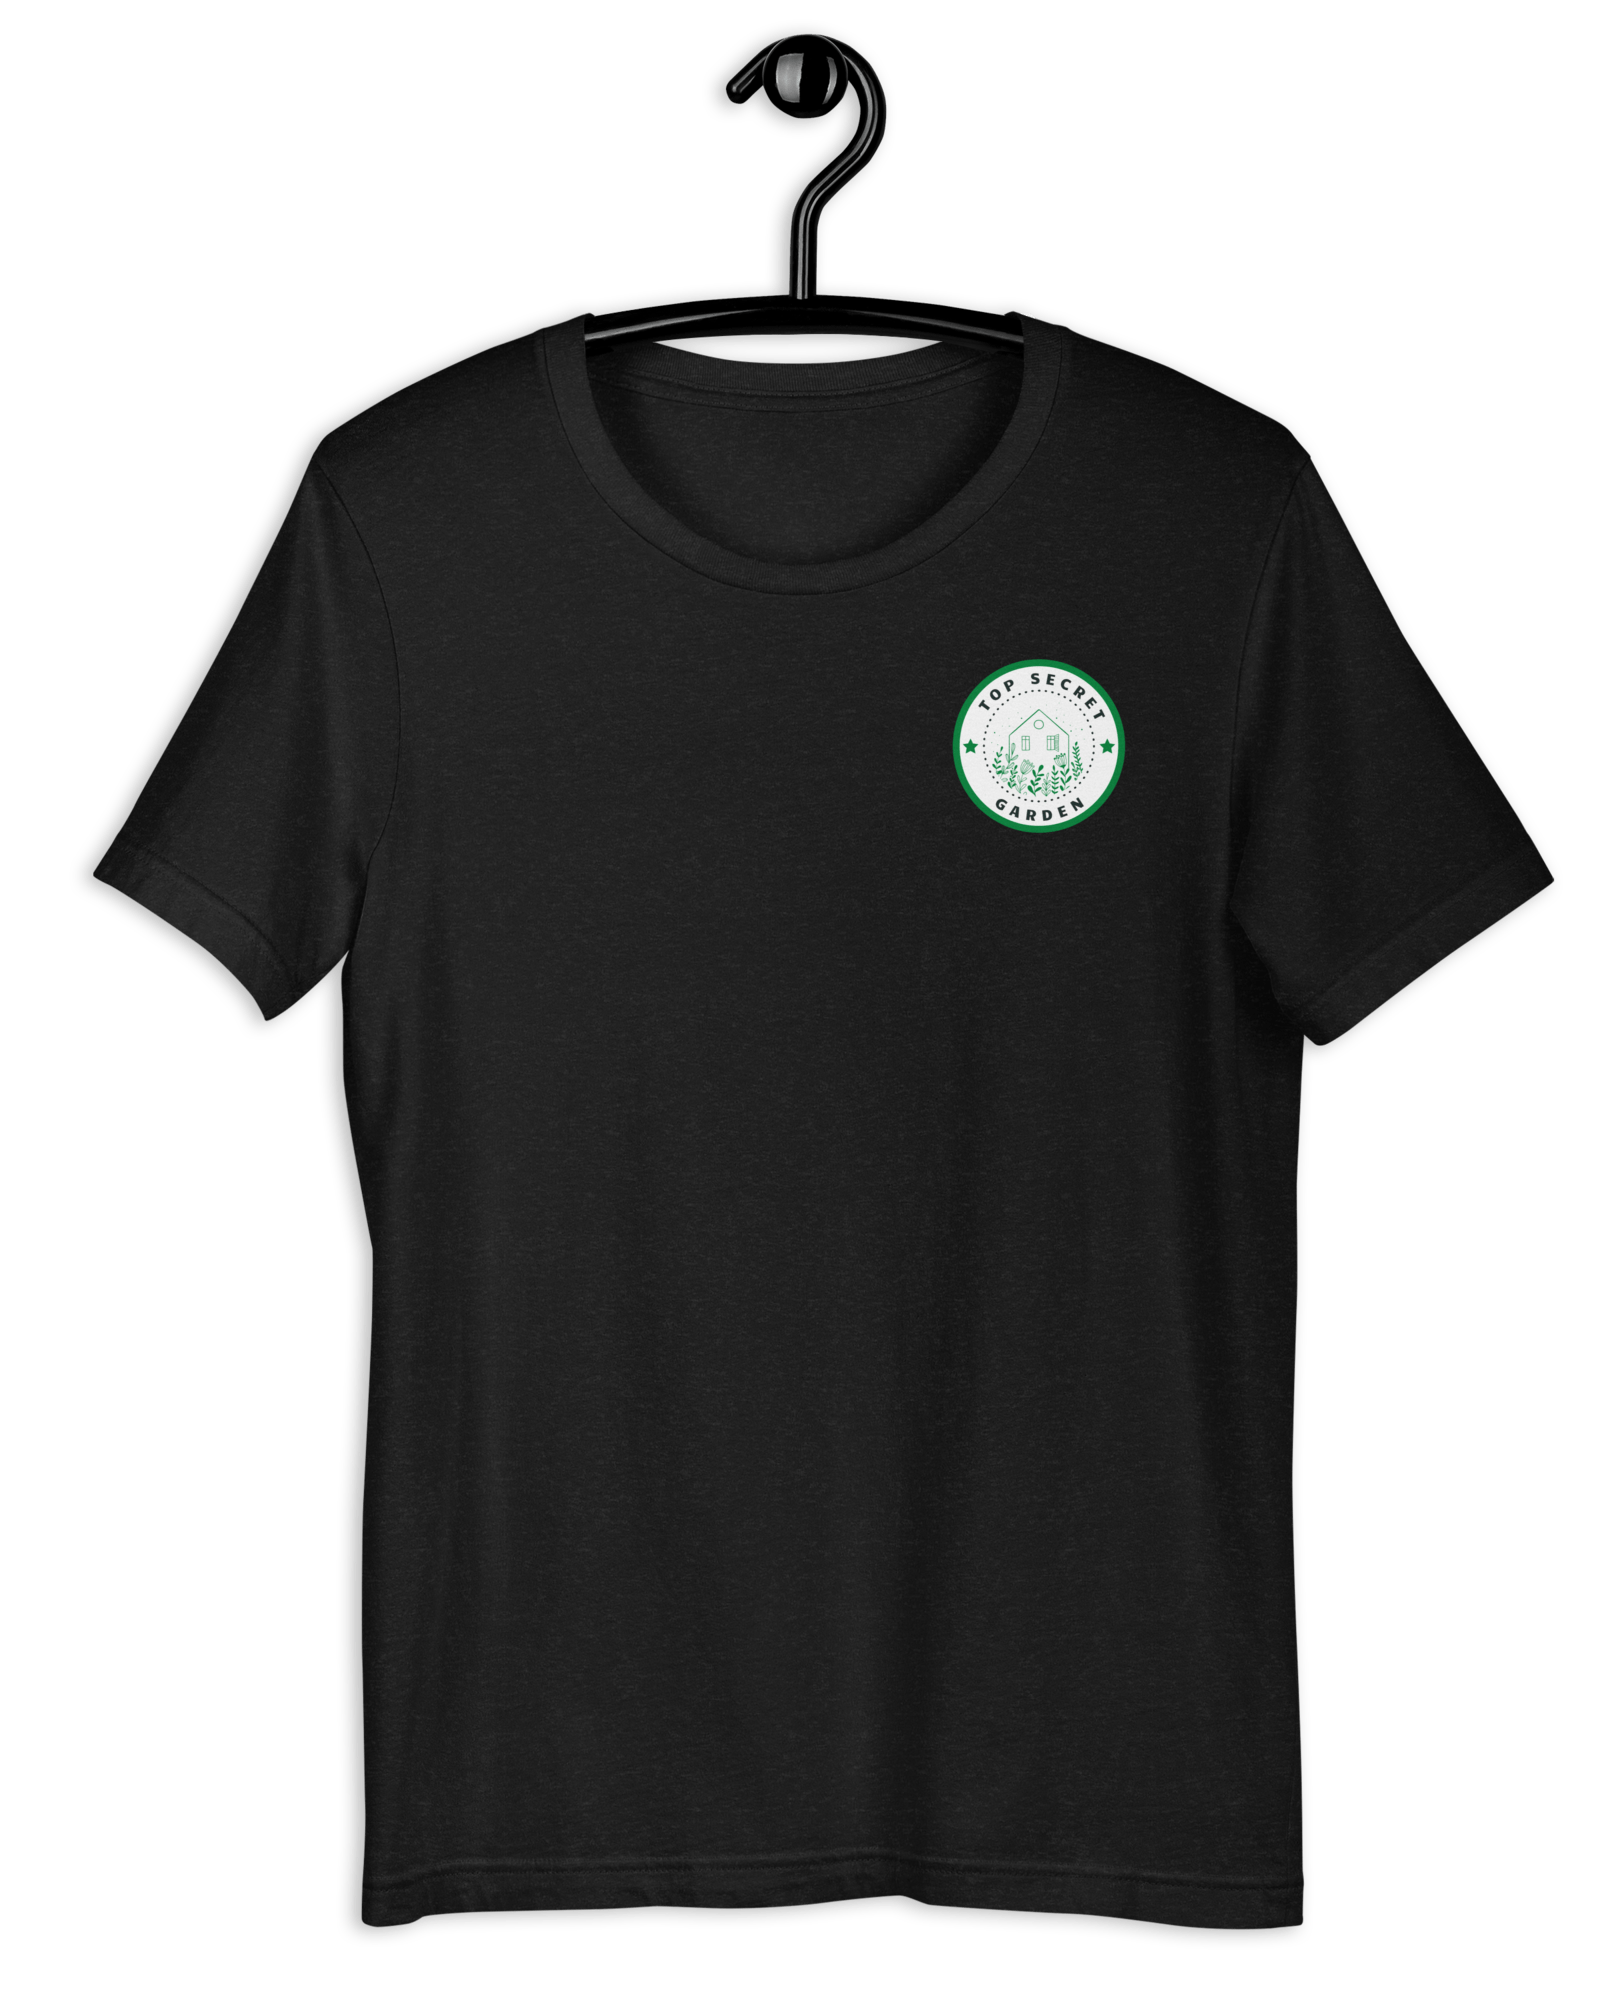 Top Secret Garden T-shirt Black Heather / S Shirts & Tops Jolly & Goode